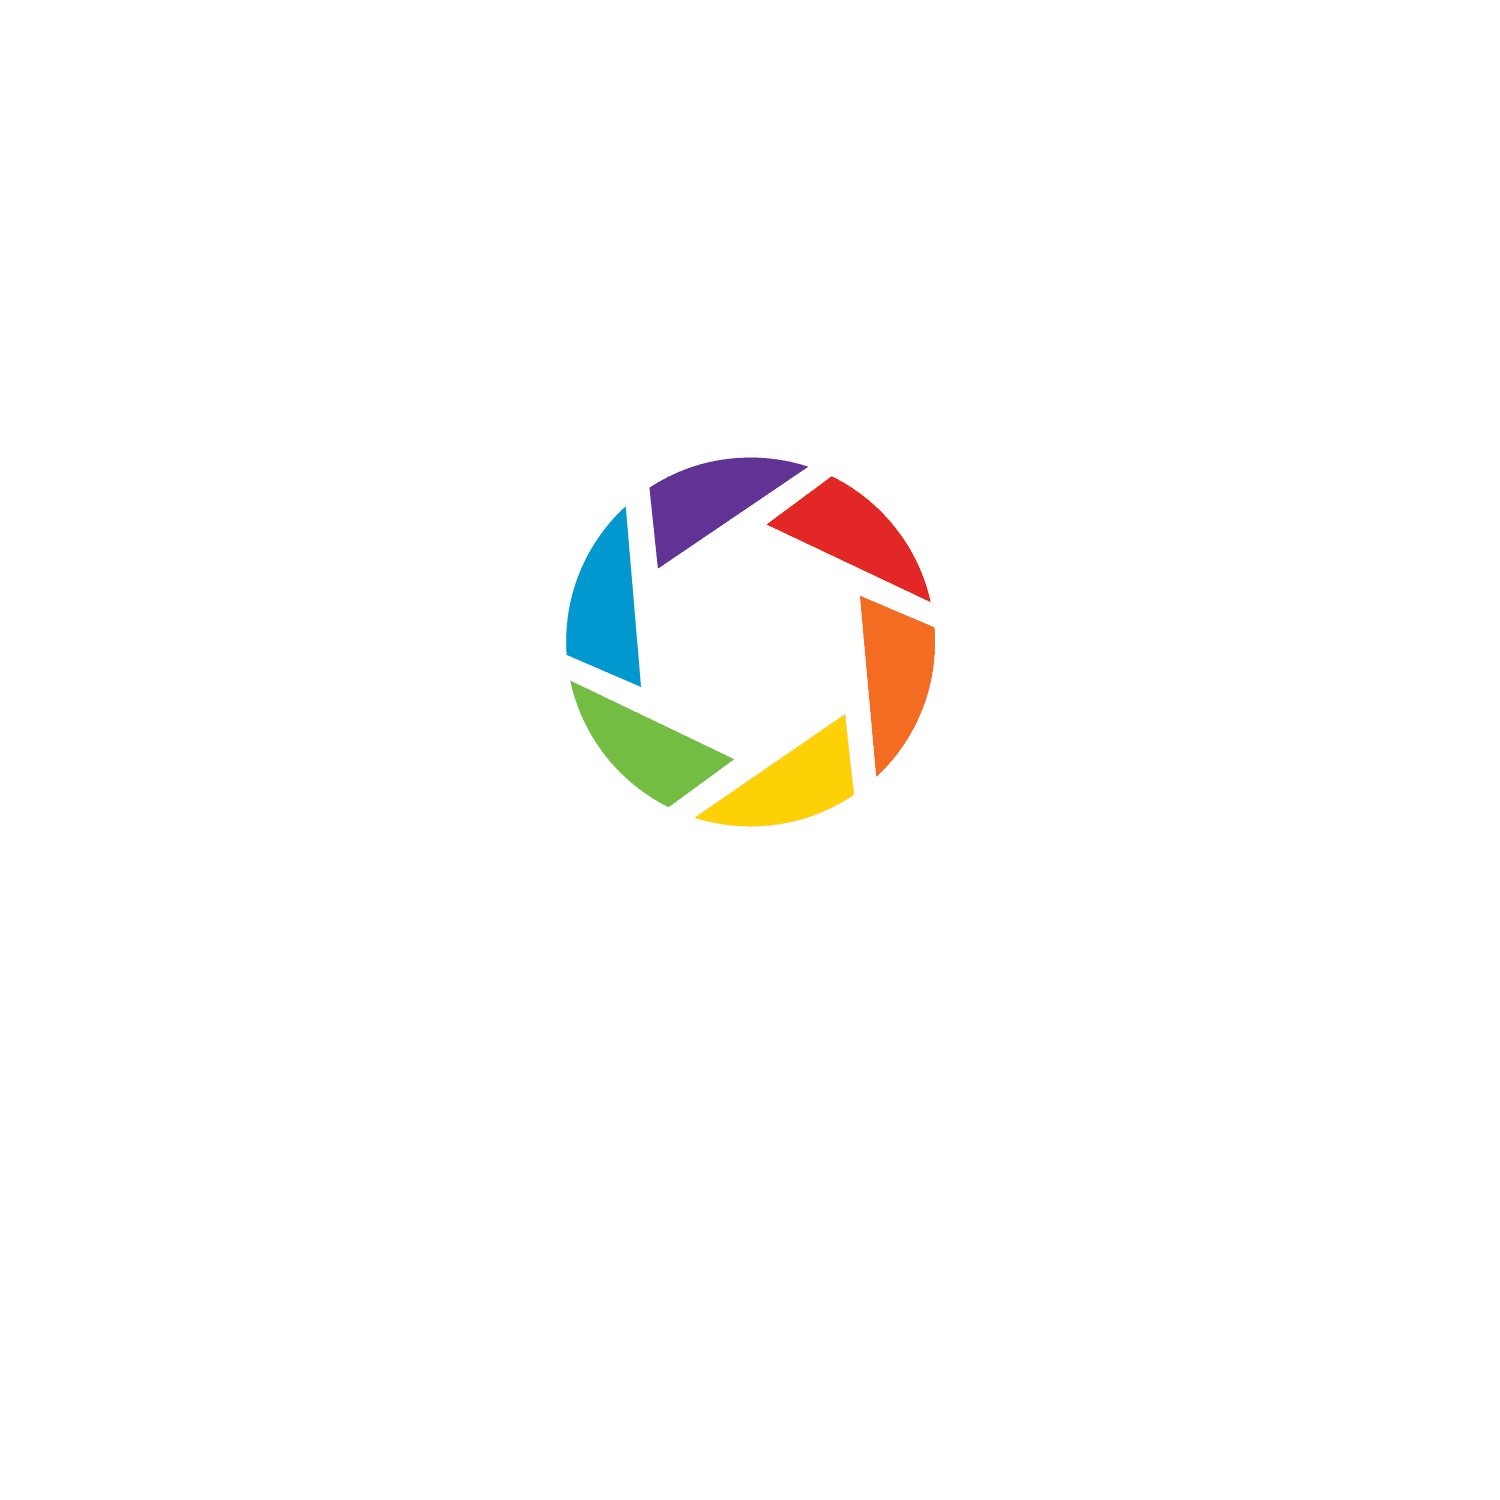 Igcs Logo